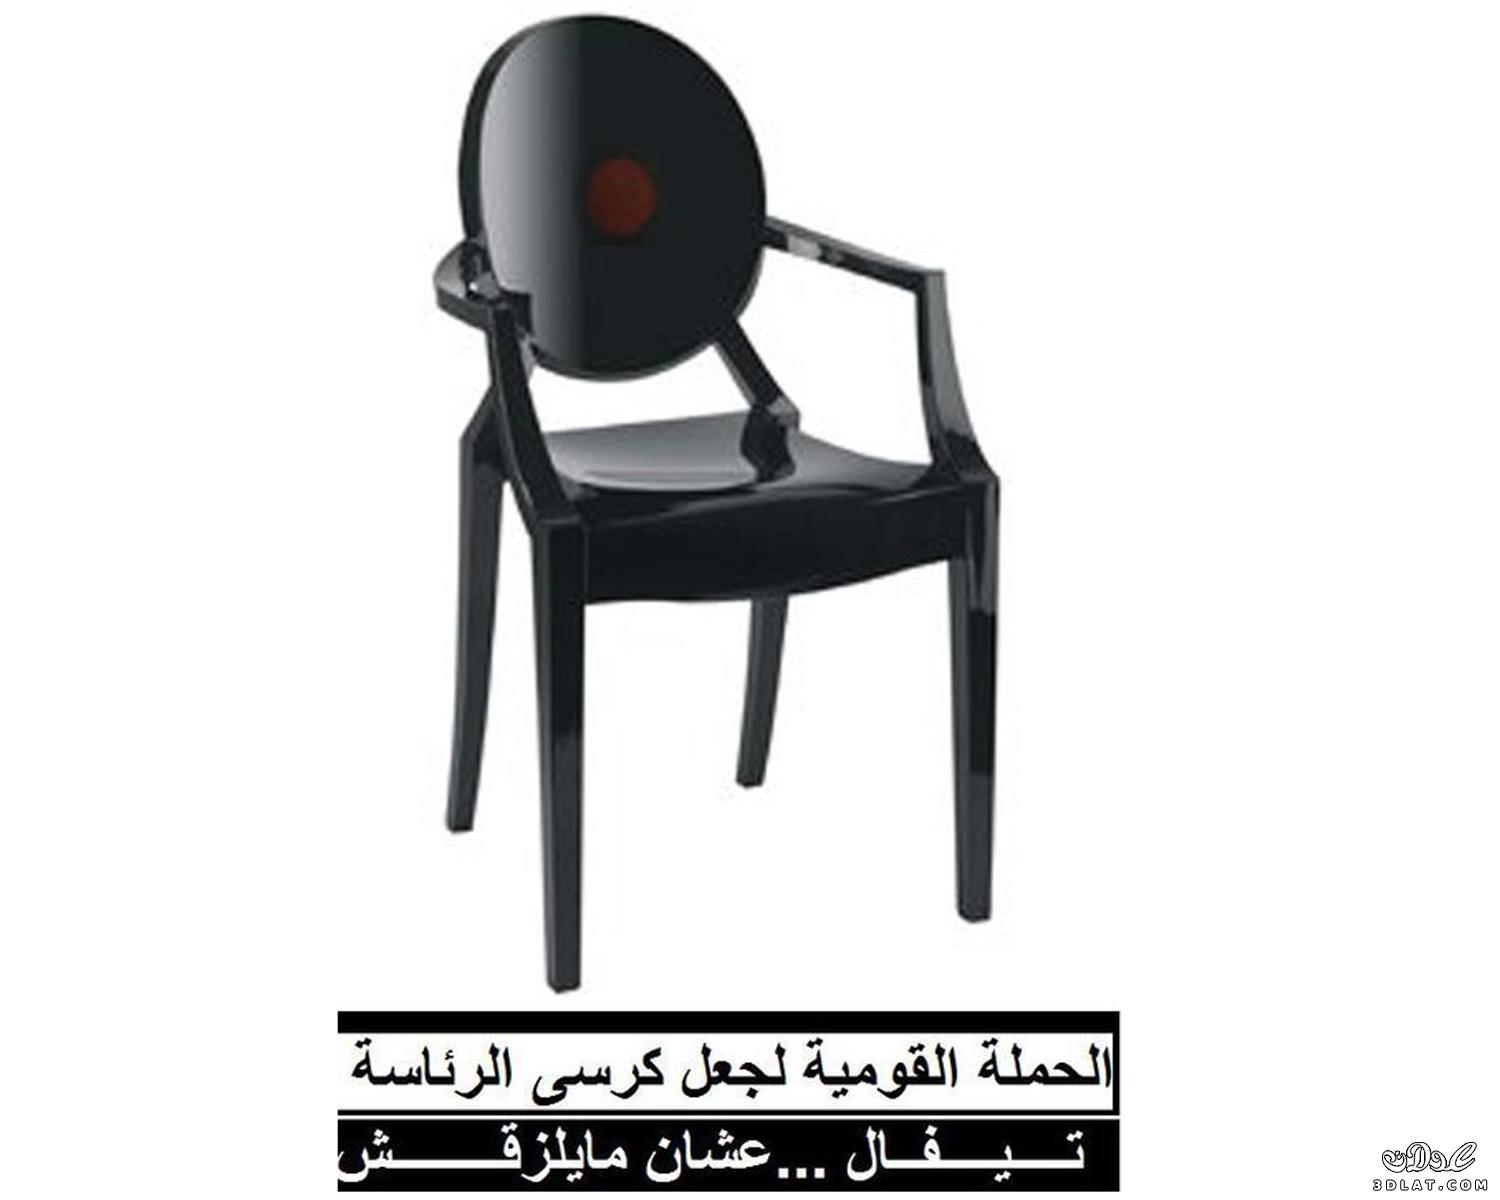 حملة على الفيسبوك لتصنيع كرسى الرئاسة من "تيفال"